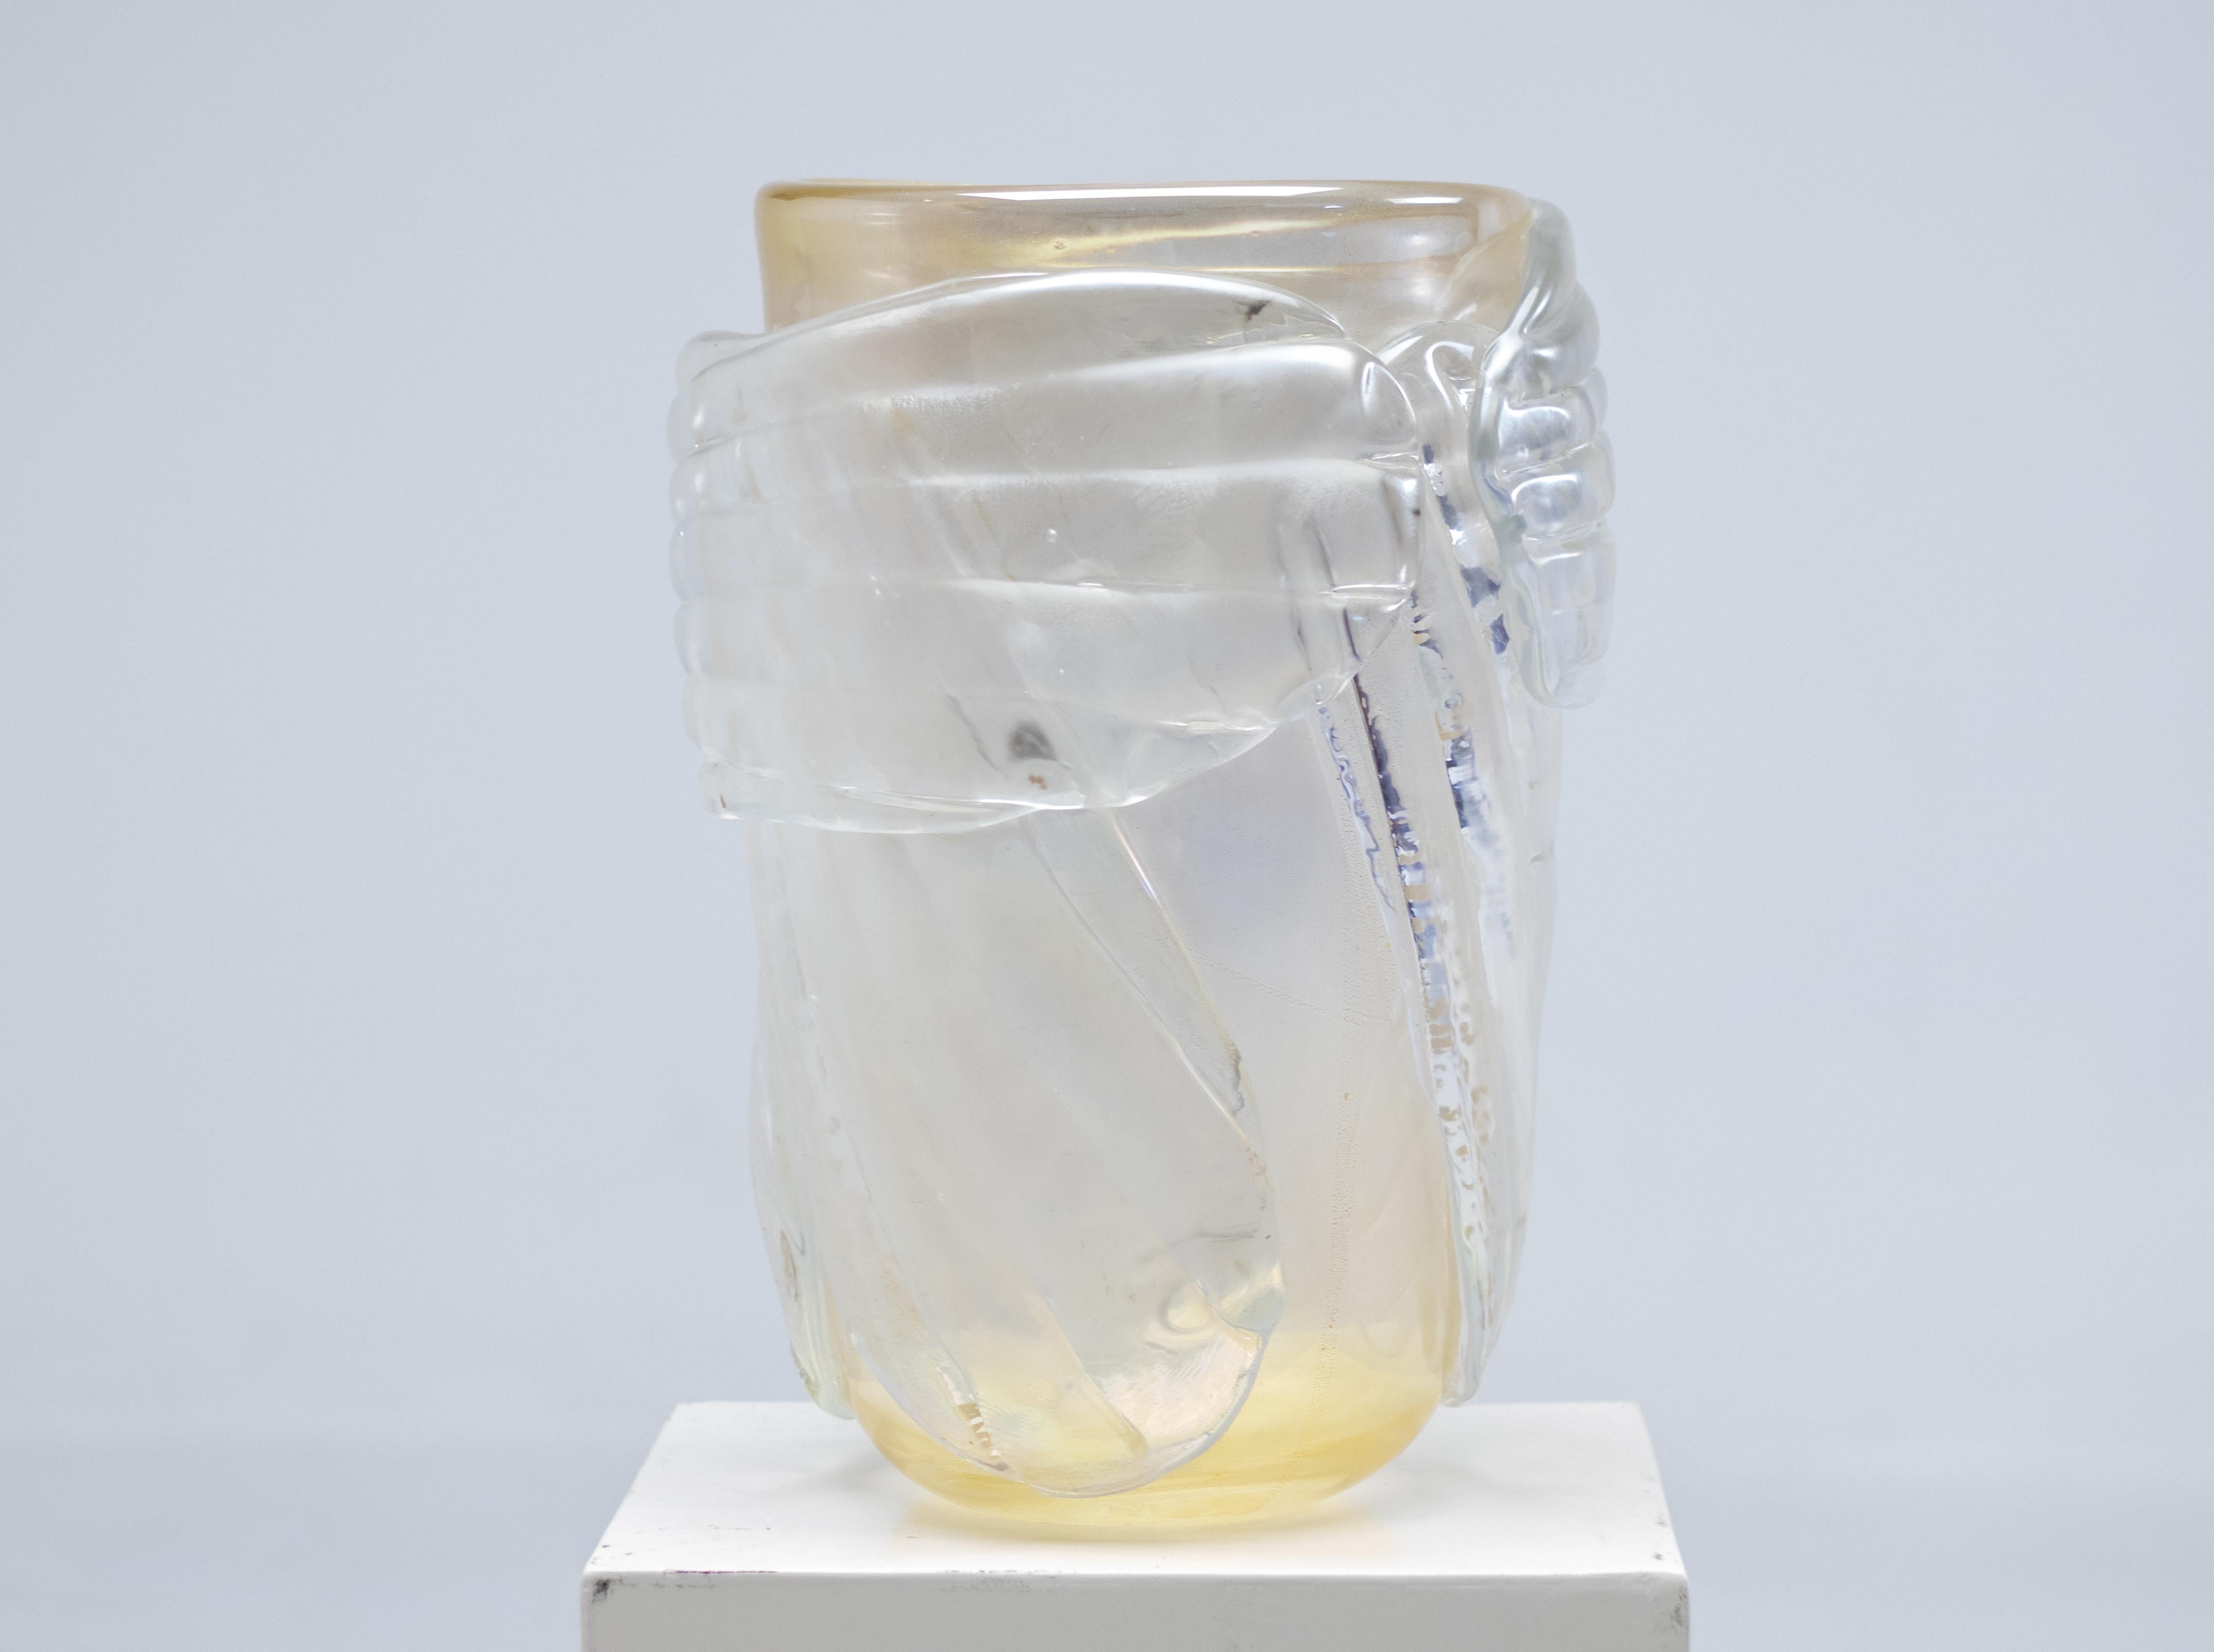 Très grand et lourd vase en verre irisé avec de subtiles inclusions de feuilles d'or, signé Colizza.
Fabriqué à la main par Carlo & Emanuele Colizza dans leur four à verre et usine Antichi Angeli.
Gravé en bas.

AA Gallery est une marque de verre